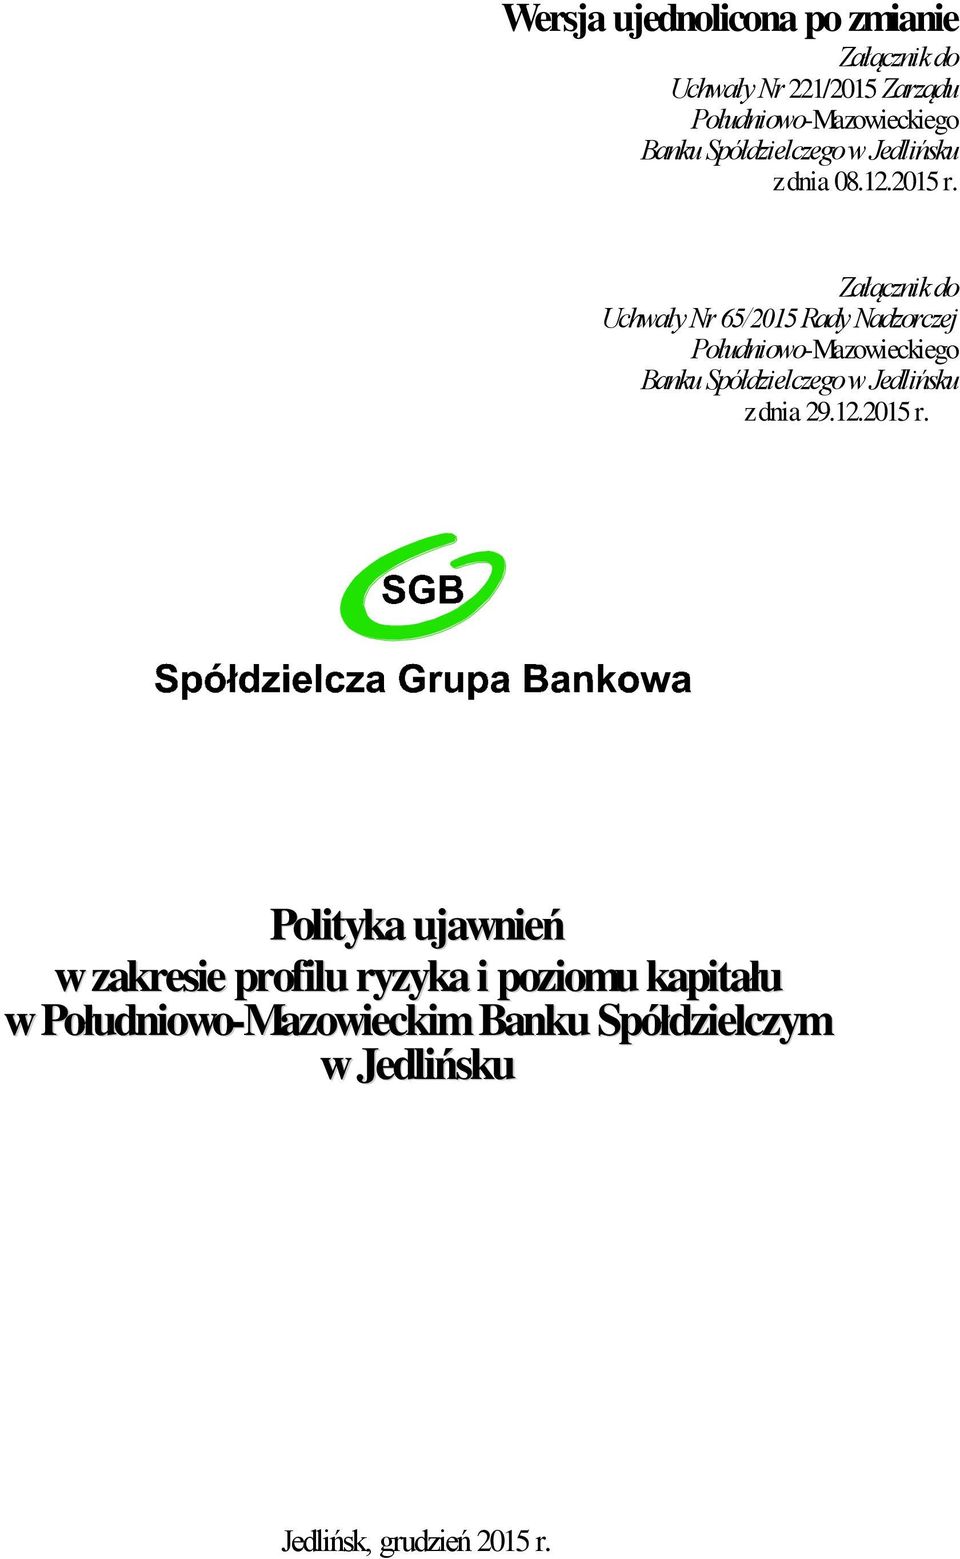 Załącznik do Uchwały Nr 65/2015 Rady Nadzorczej Południowo-Mazowieckiego Banku Spółdzielczego w Jedlińsku